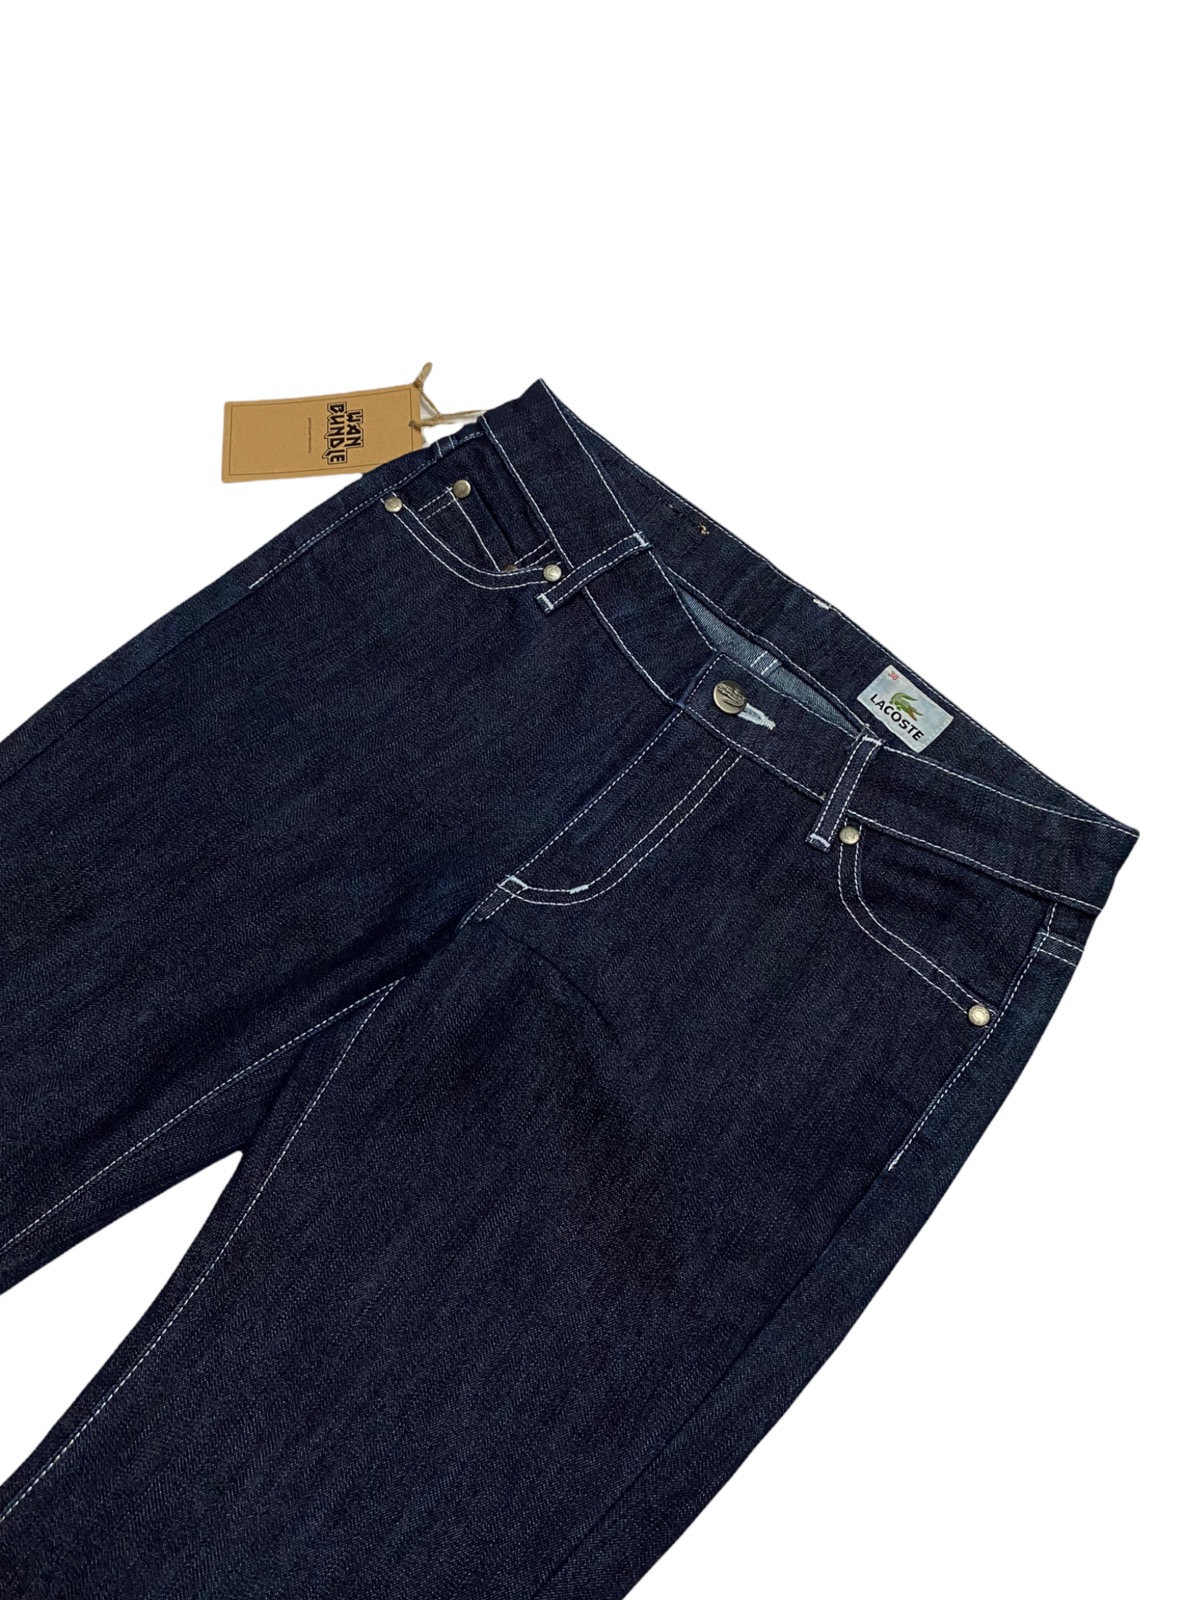 Women Lacoste Jeans Denim Made in Japan - 2